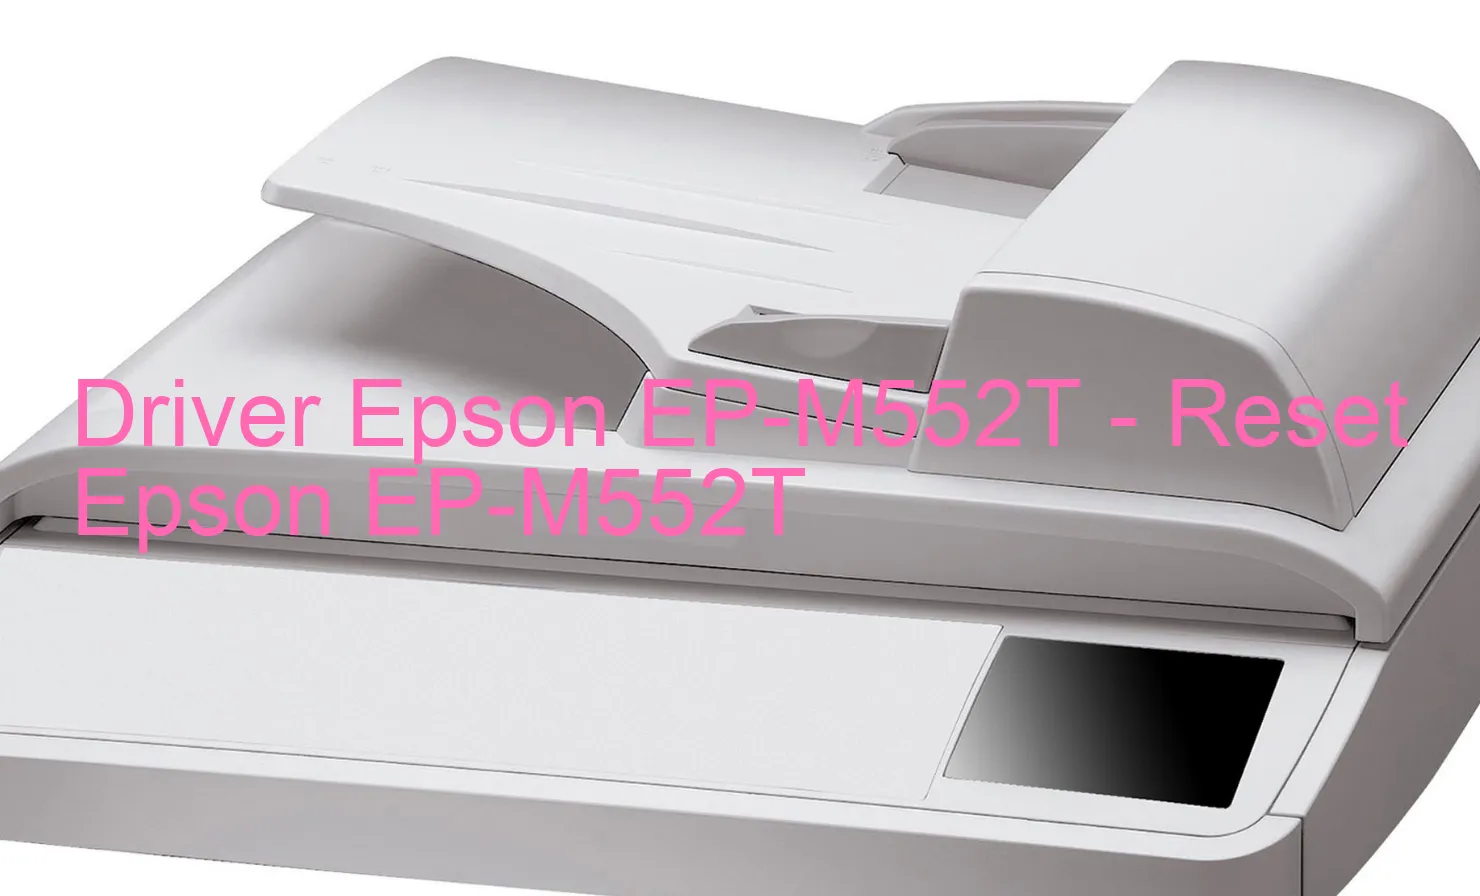 Epson EP-M552Tのドライバー、Epson EP-M552Tのリセットソフトウェア